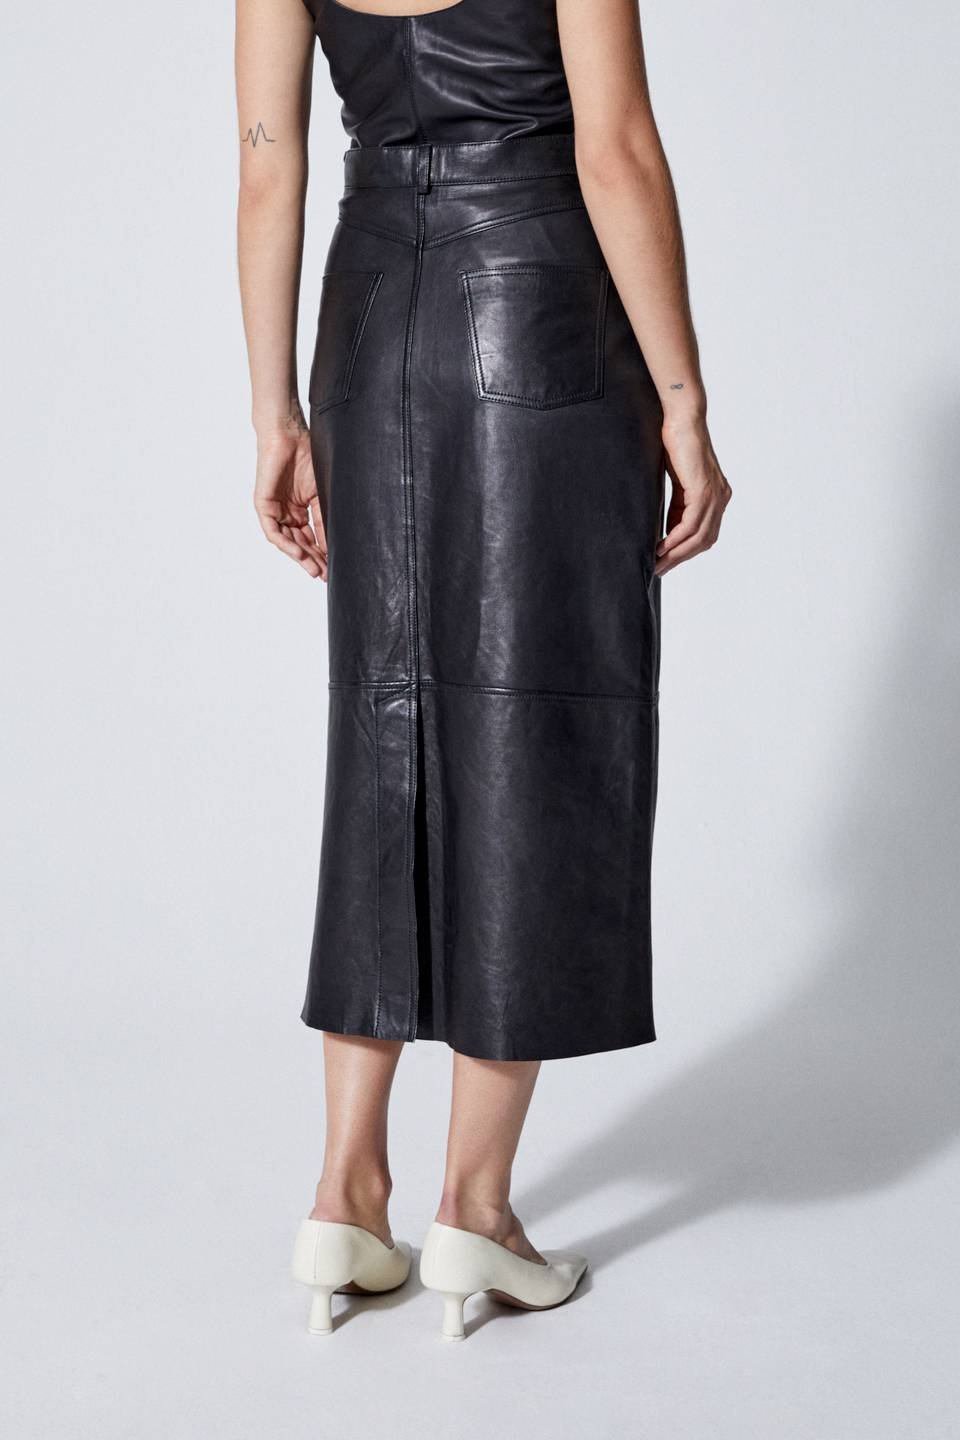 House of Dagmar - Sky Chrome Free Leather Skirt